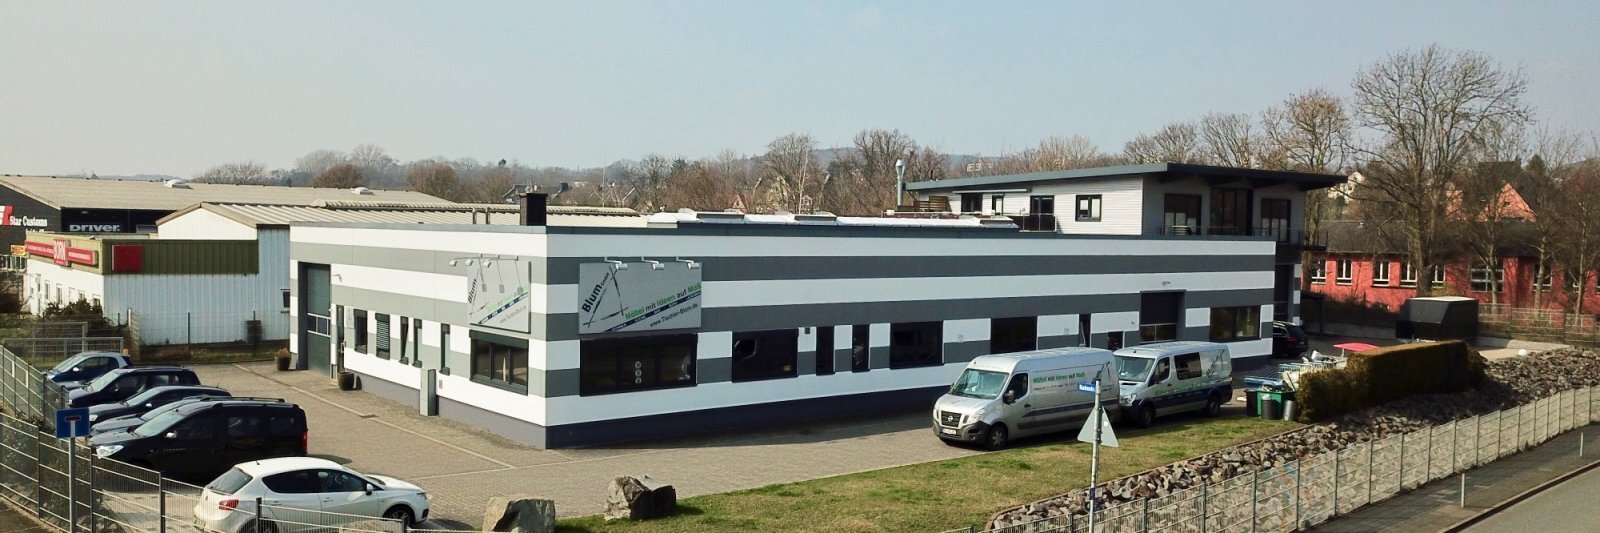 Tischlerei-Werkstatt in Hagen Haspe